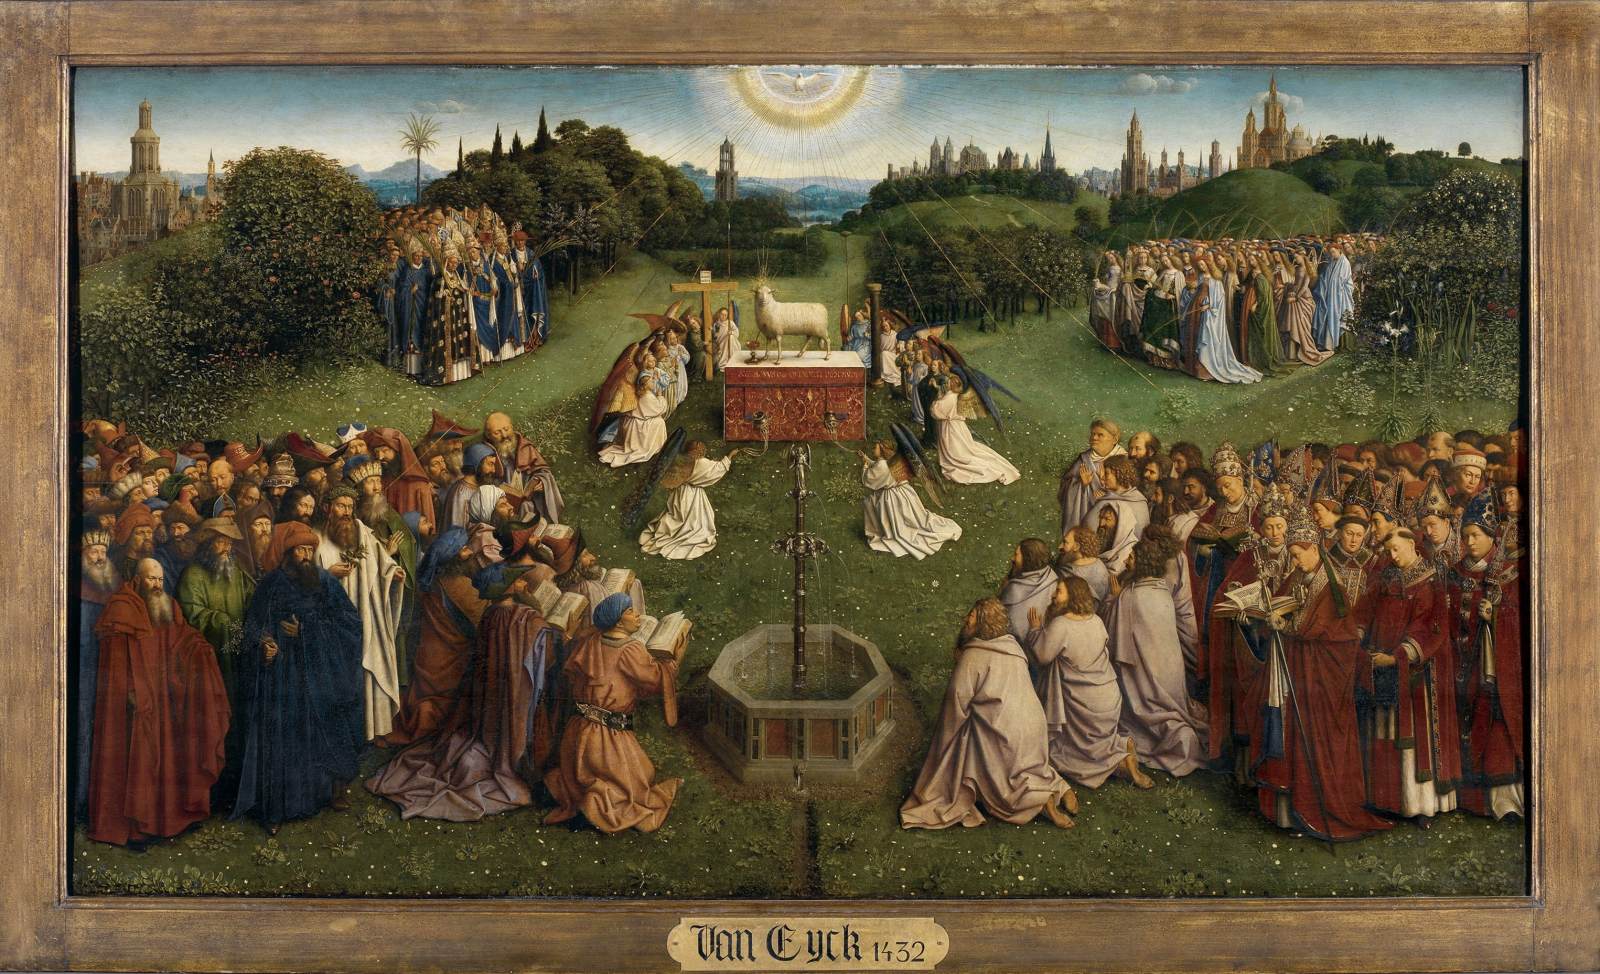 La pala d'altare del Gand: adorazione dell'agnello